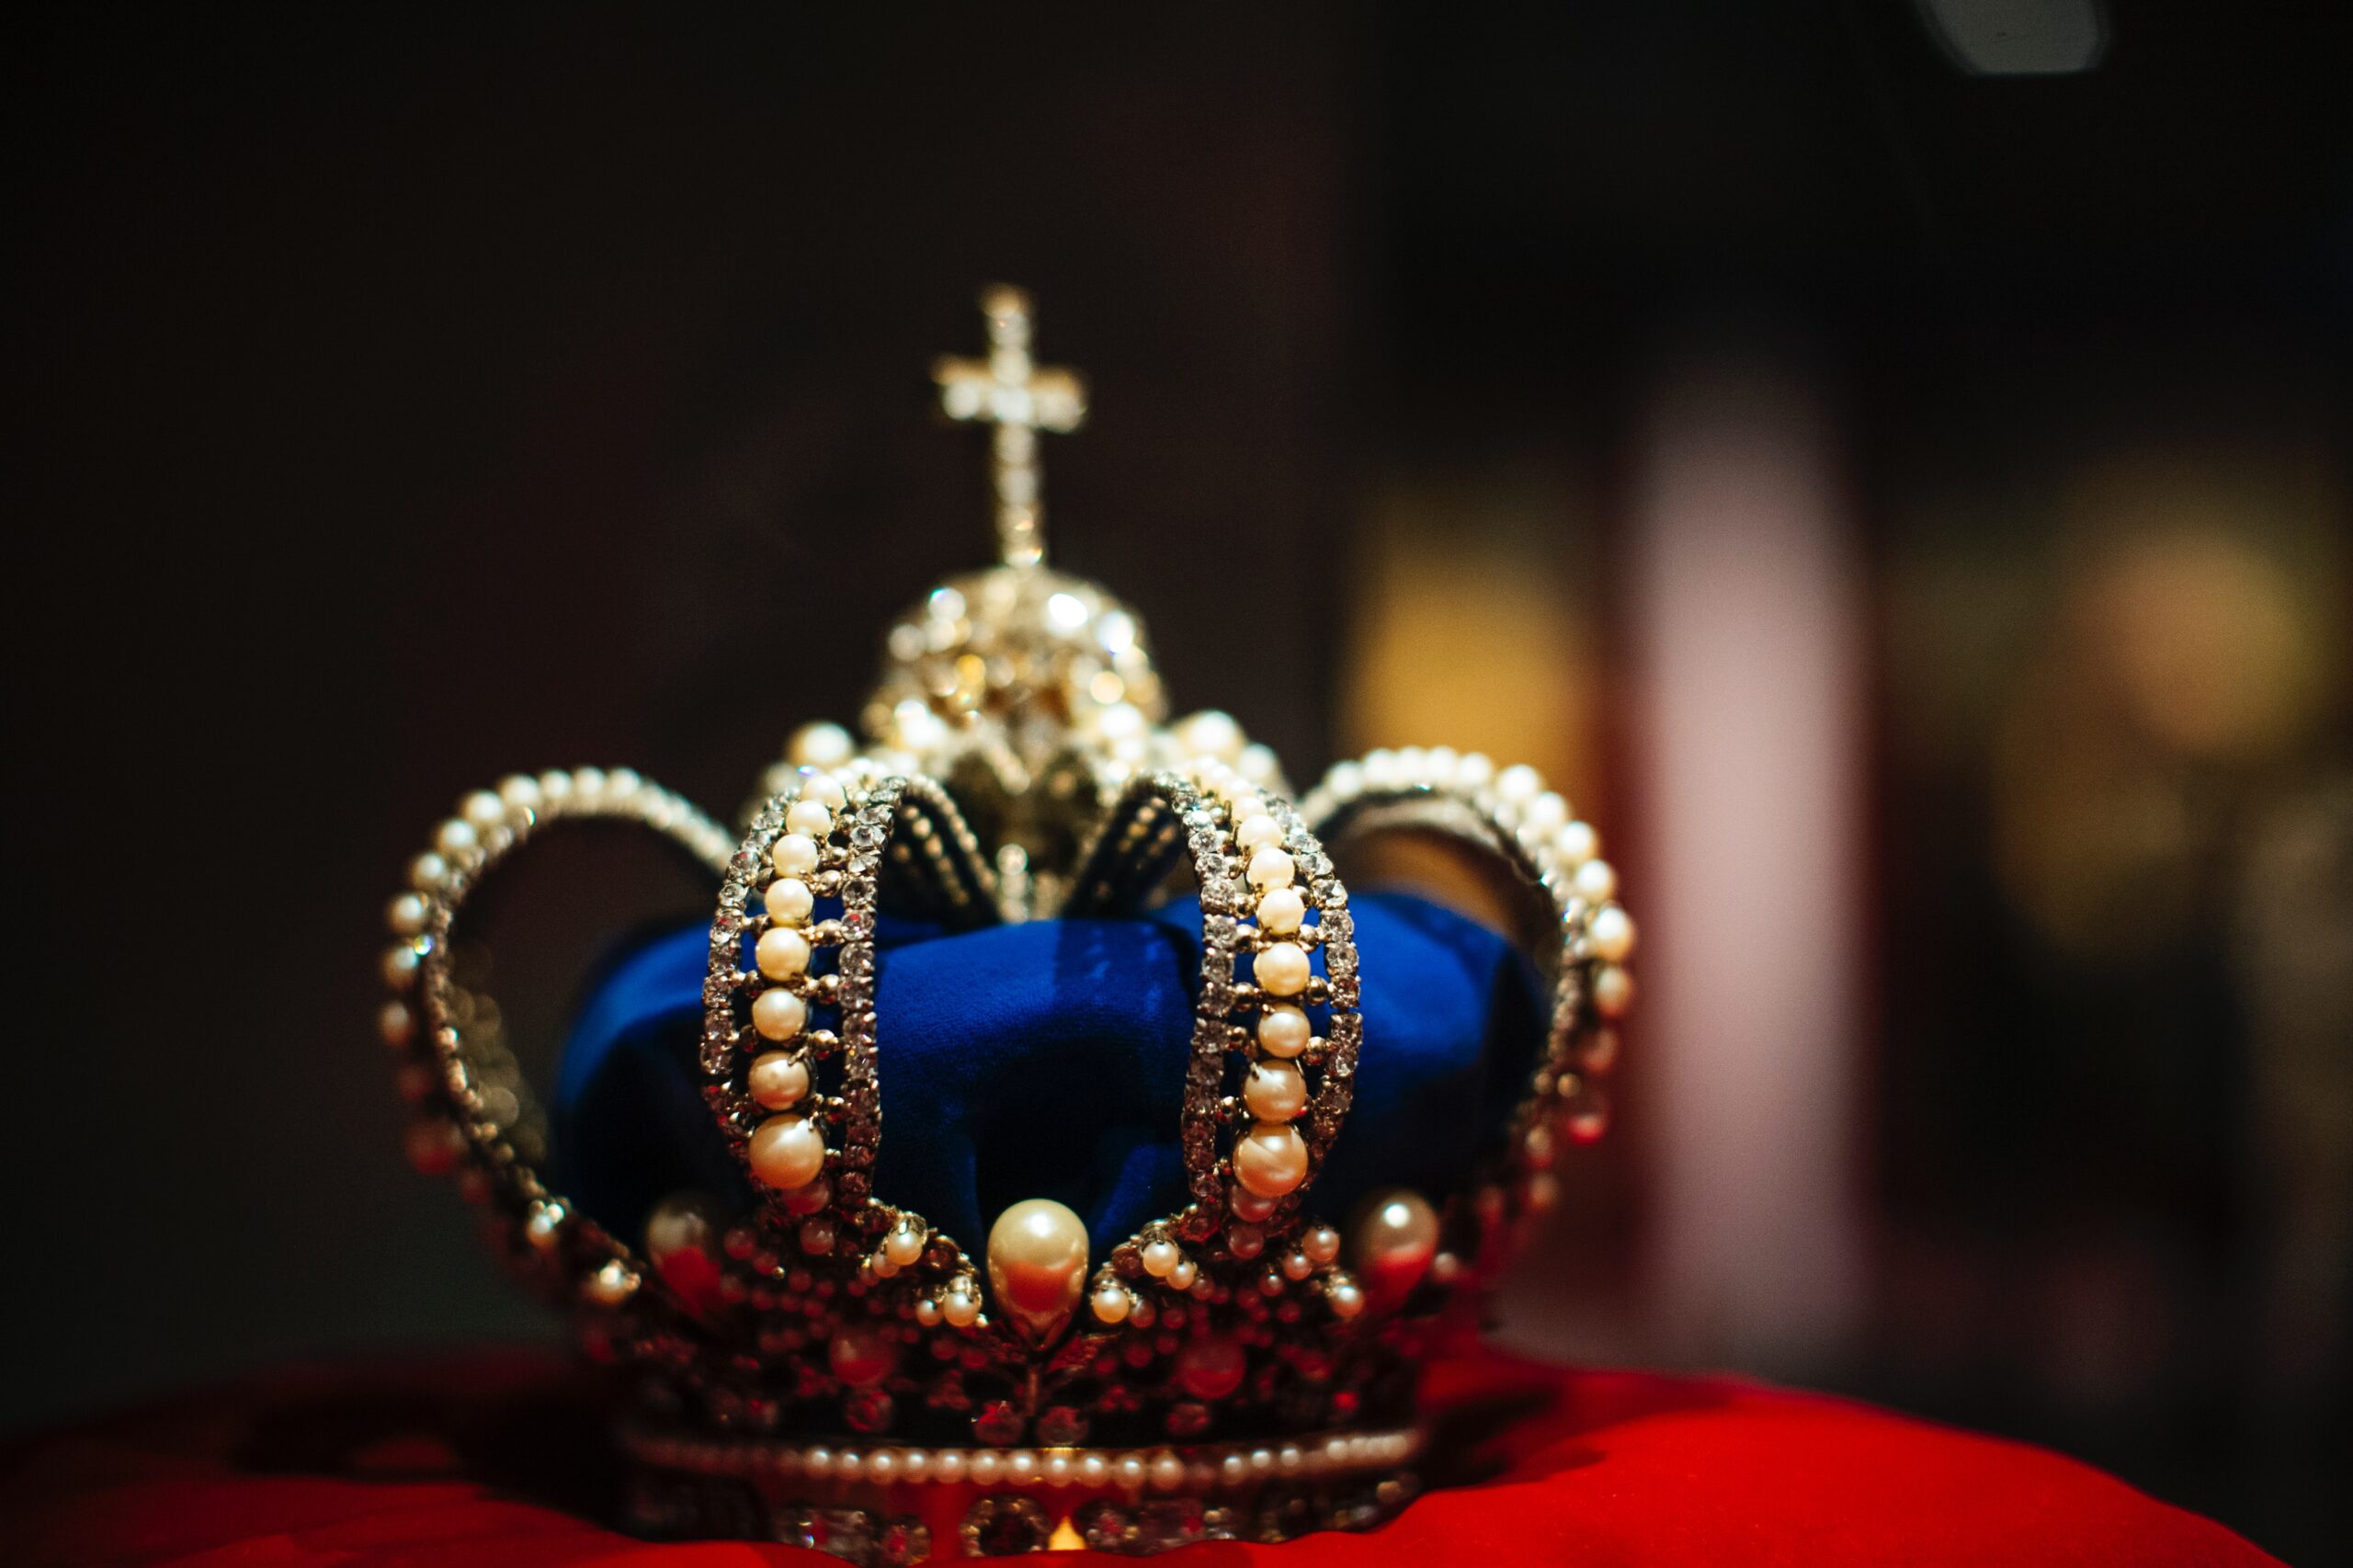 blue crown on red velvet